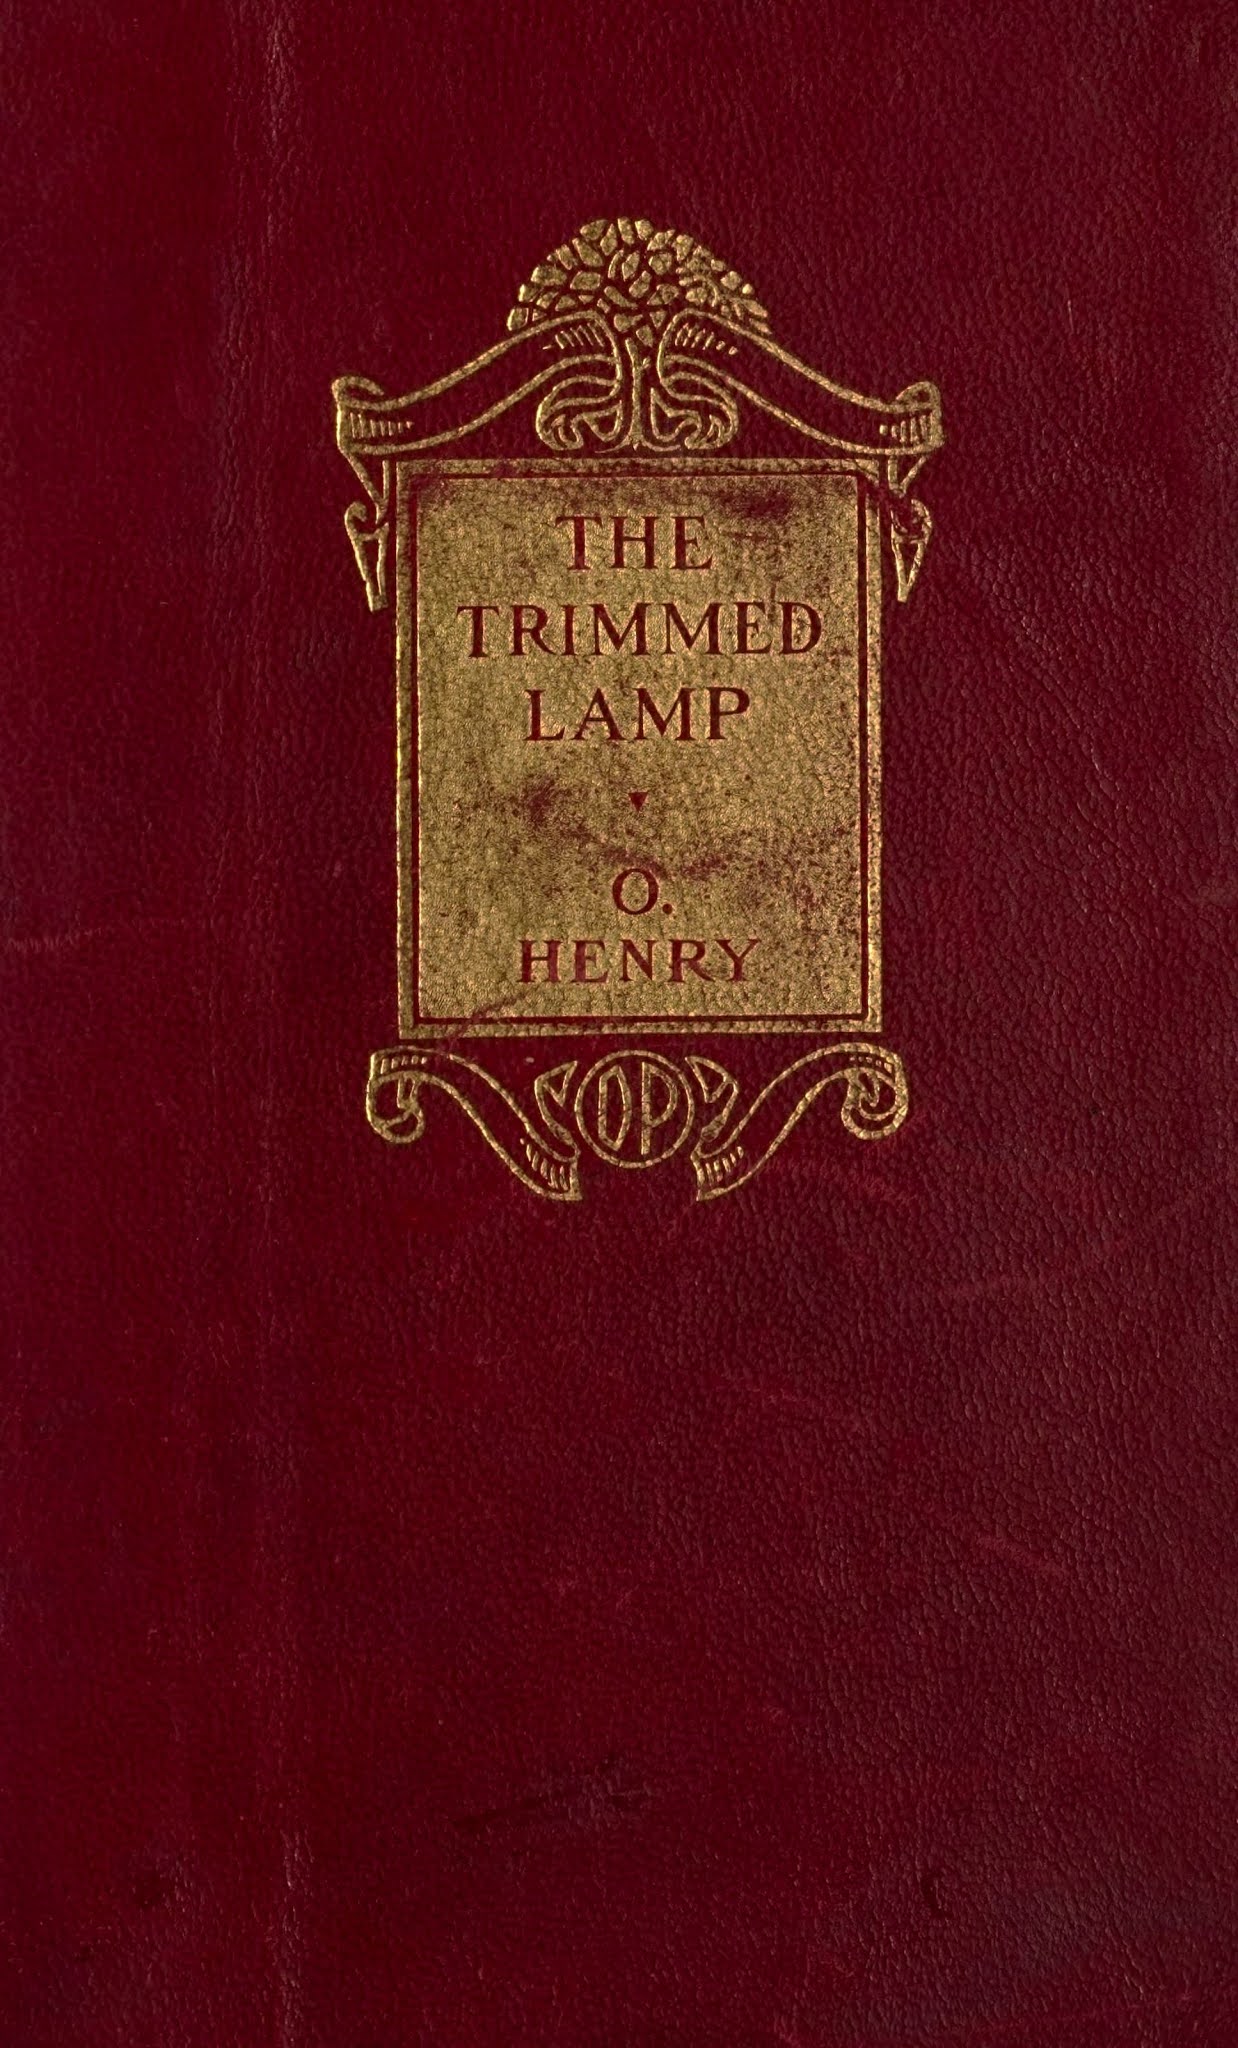 Ｏ・ヘンリーの『最後の葉っぱ』を含む小説集の赤茶色の表紙